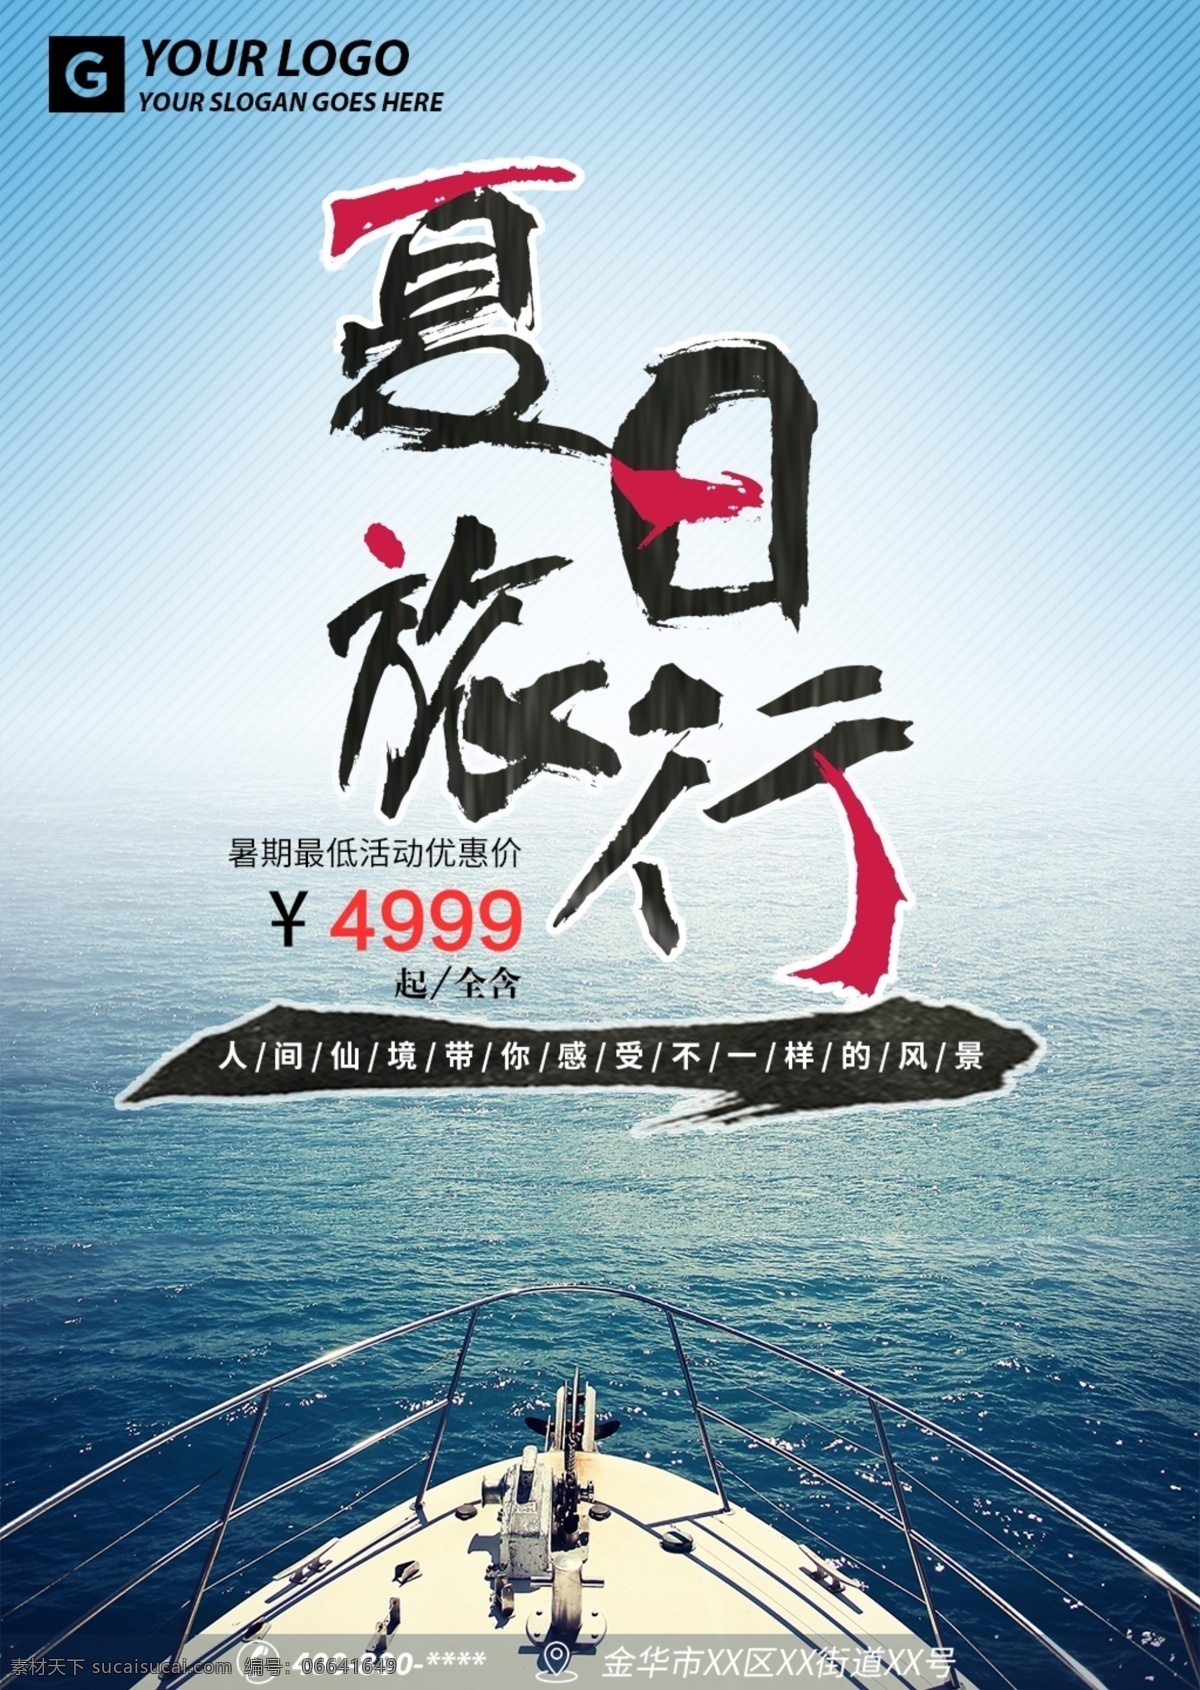 夏日旅游海报 旅游宣传海报 旅游海报 旅游 景点 海洋 船 优惠 海 蓝色 简约 毛笔